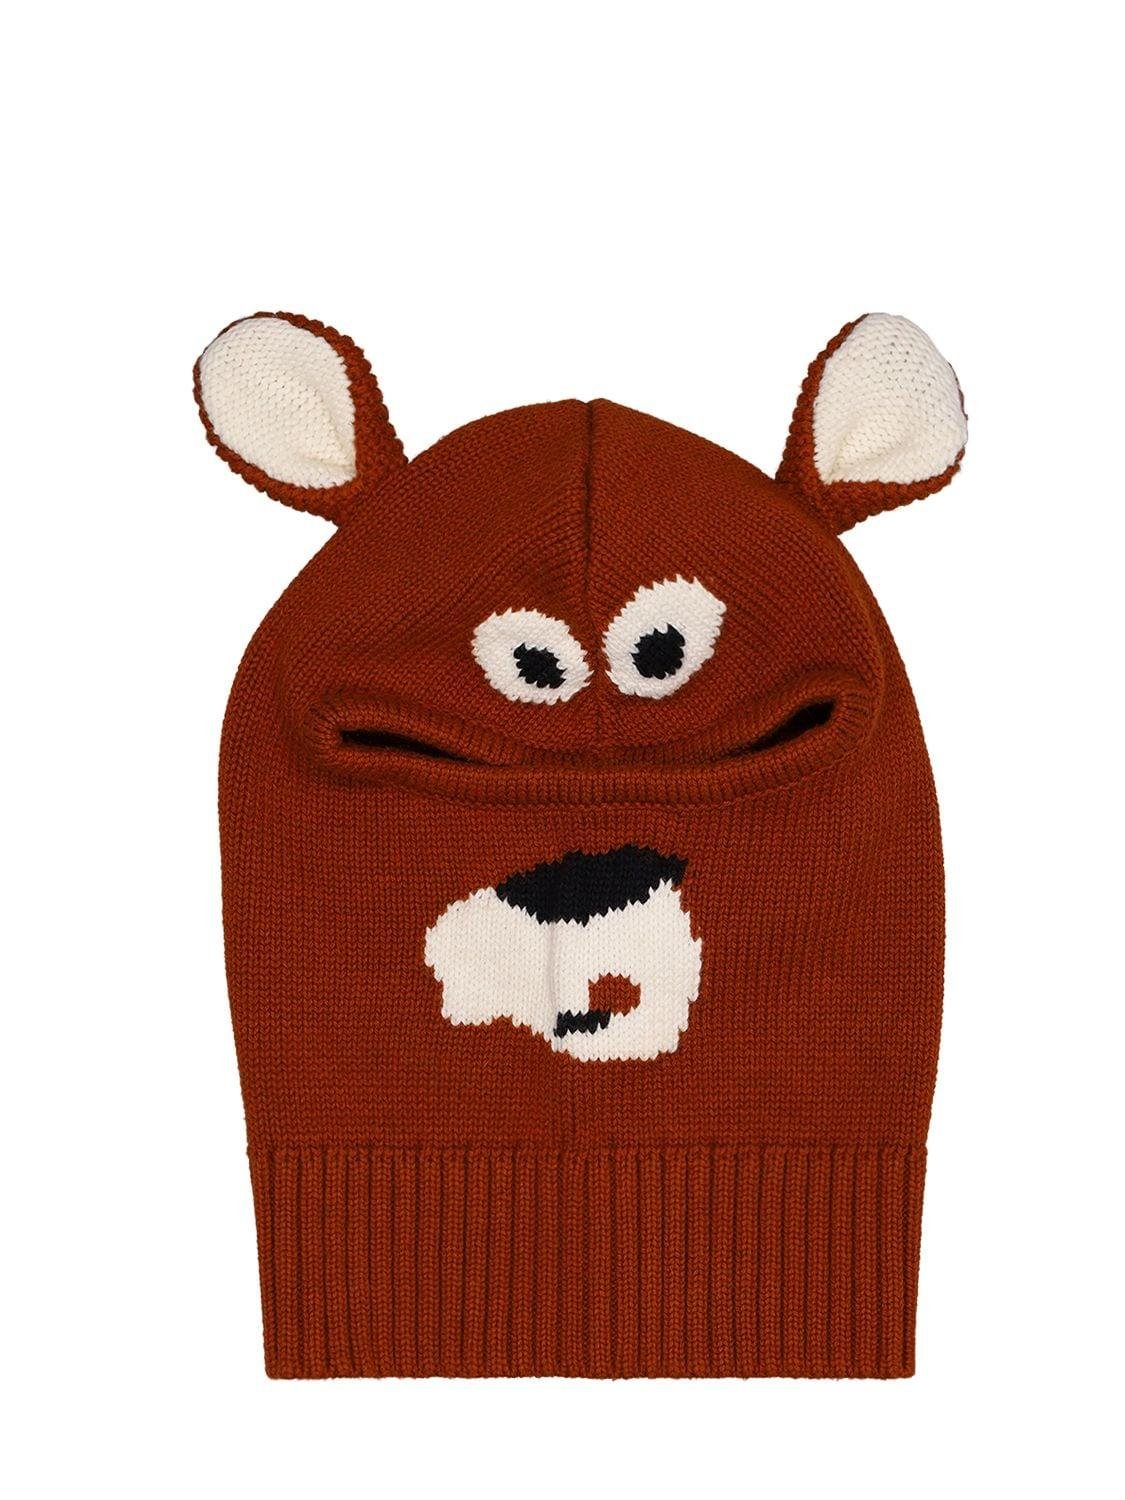 Bear Knit Organic Cotton Hat W/ Ears by STELLA MCCARTNEY